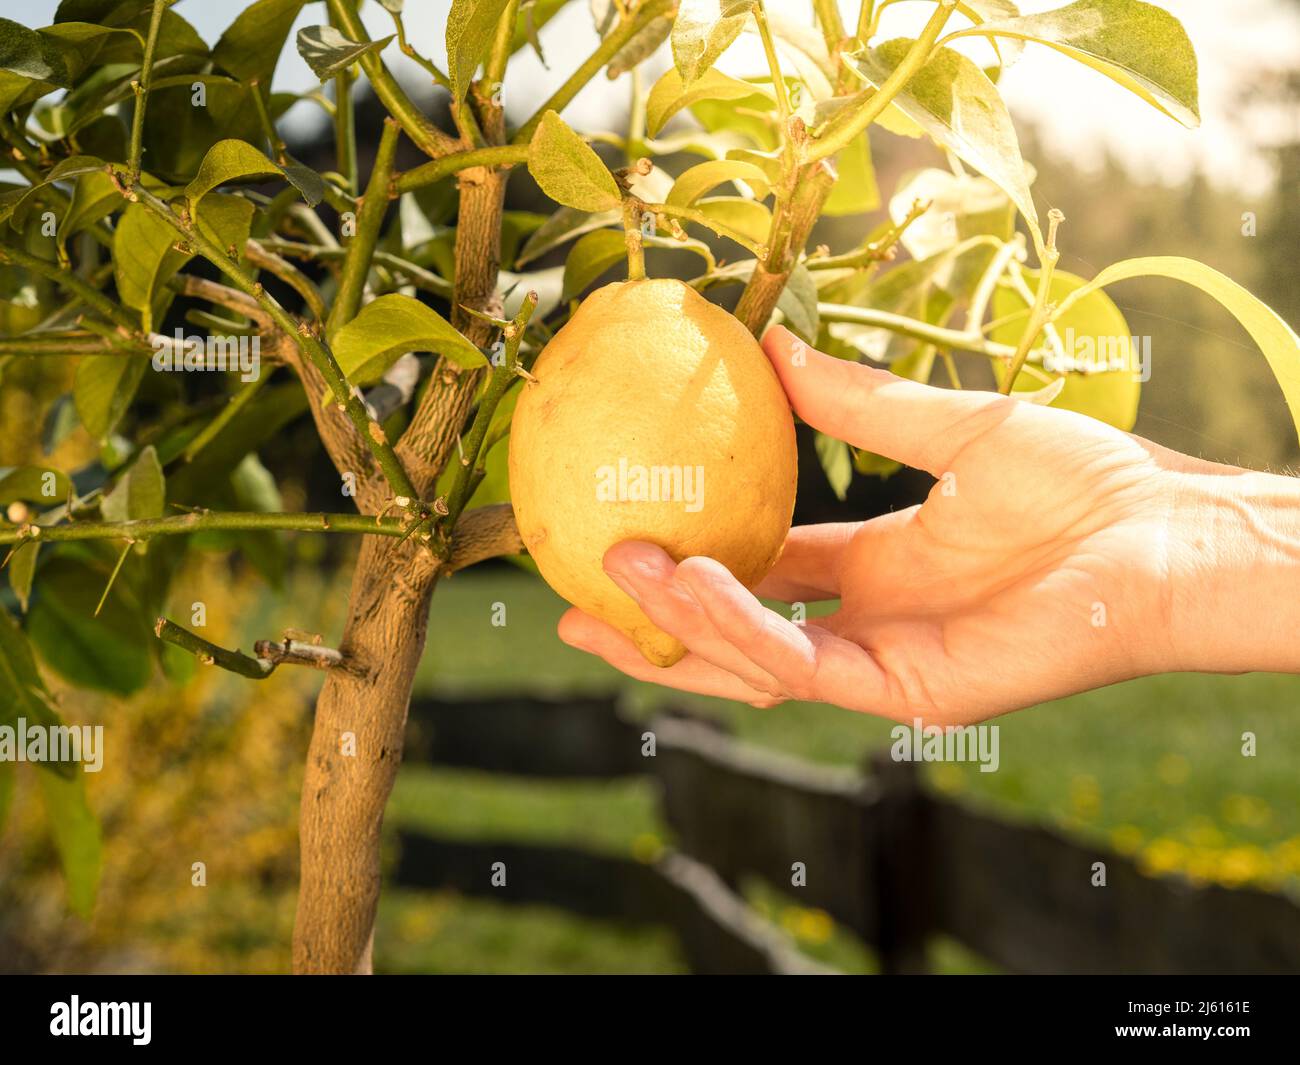 la main femelle casse un citron de la branche de l'arbre - citrons mûrs accrochés à l'arbre. croissant de citron dans notre propre jardin Banque D'Images